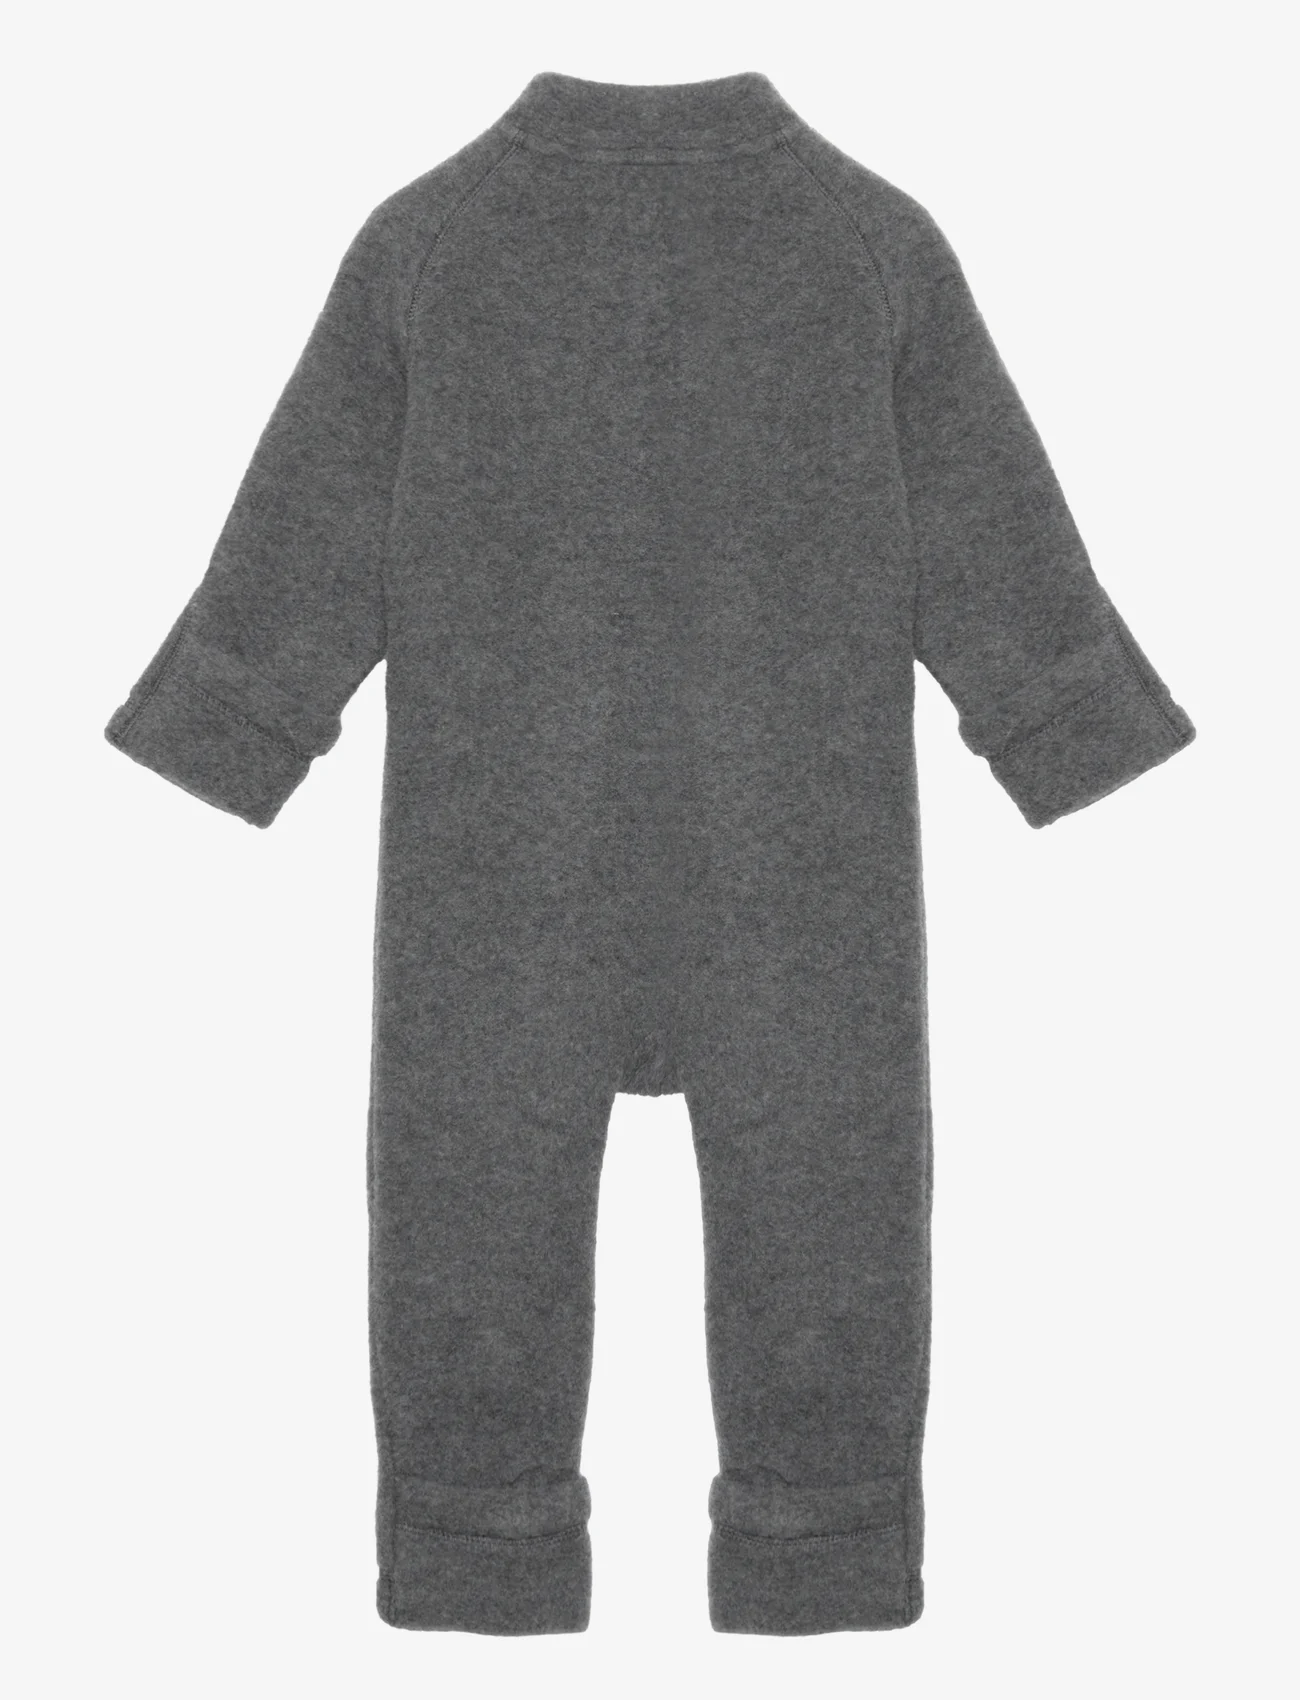 mikk-line - Wool Baby Suit - fleece overalls - anthracite melange - 1